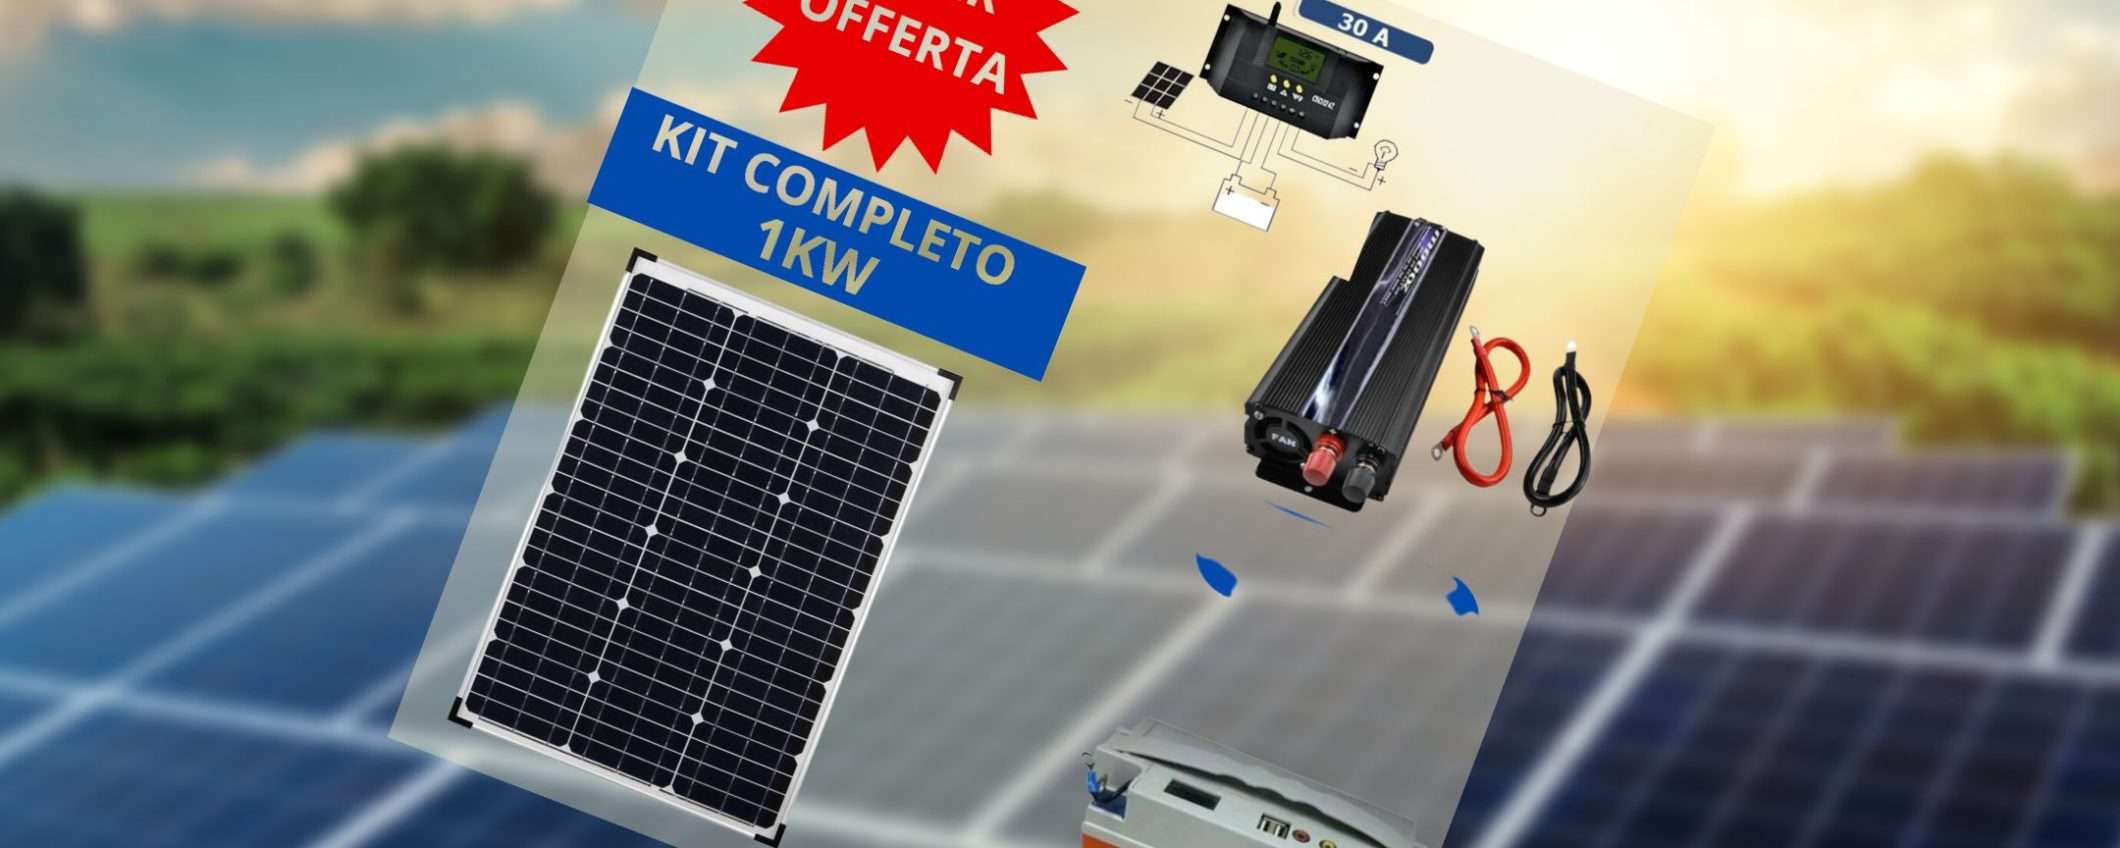 Kit fotovoltaico con ACCUMULO e inverter a prezzo stracciato: occasione WOW (144€)